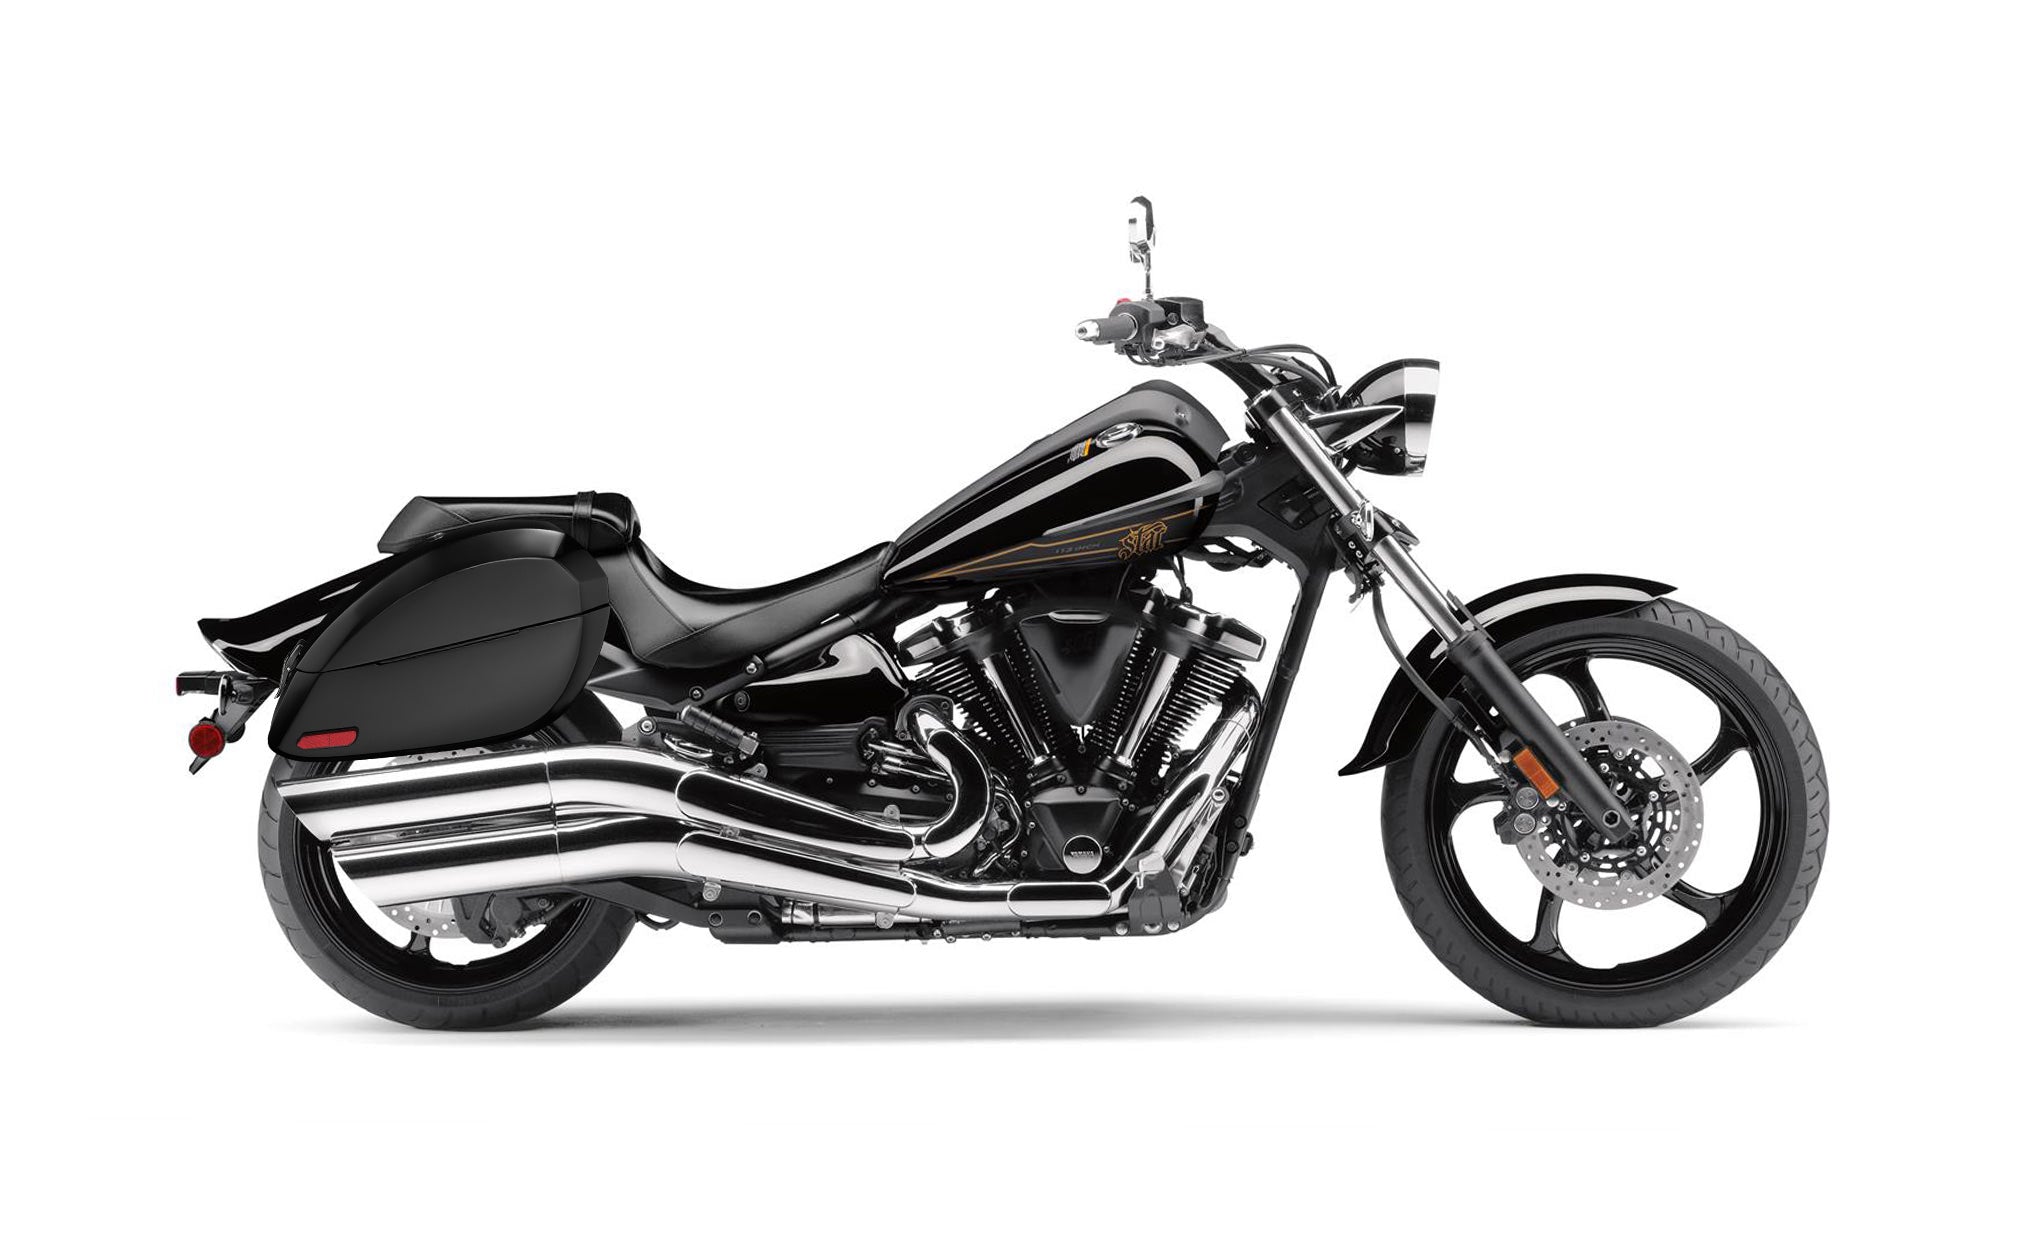 Viking Phantom Large Yamaha Raider Painted Motorcycle Hard Saddlebags Engineering Excellence with Bag on Bike @expand